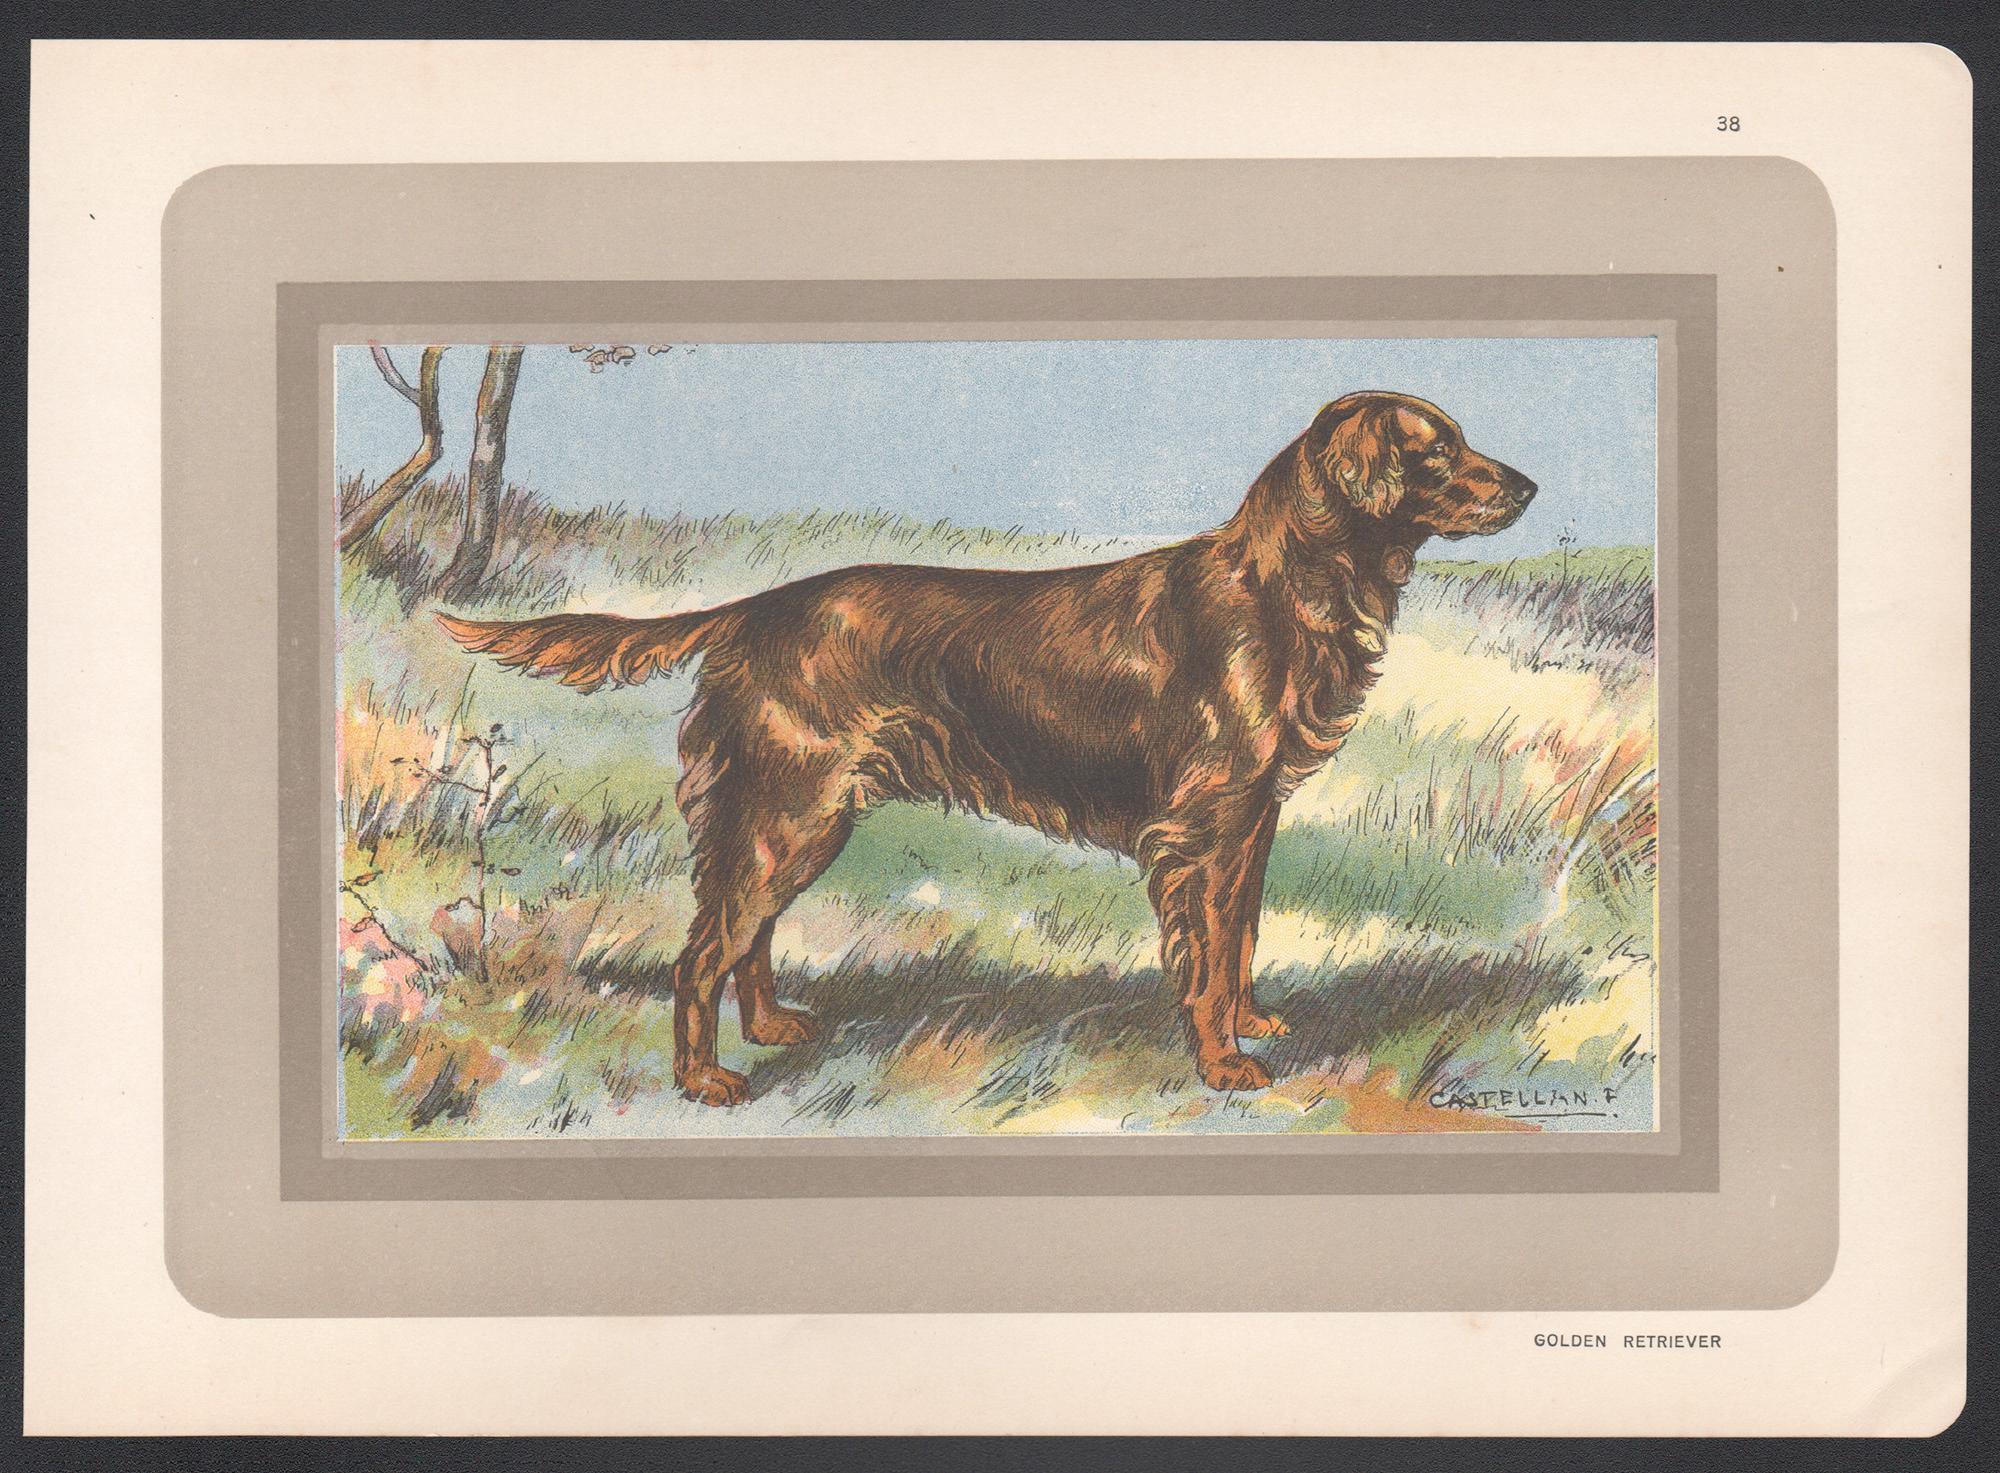 Golden Retriever, Französischer Chromolithographiedruck mit Hund, 1931 – Print von F Castellan